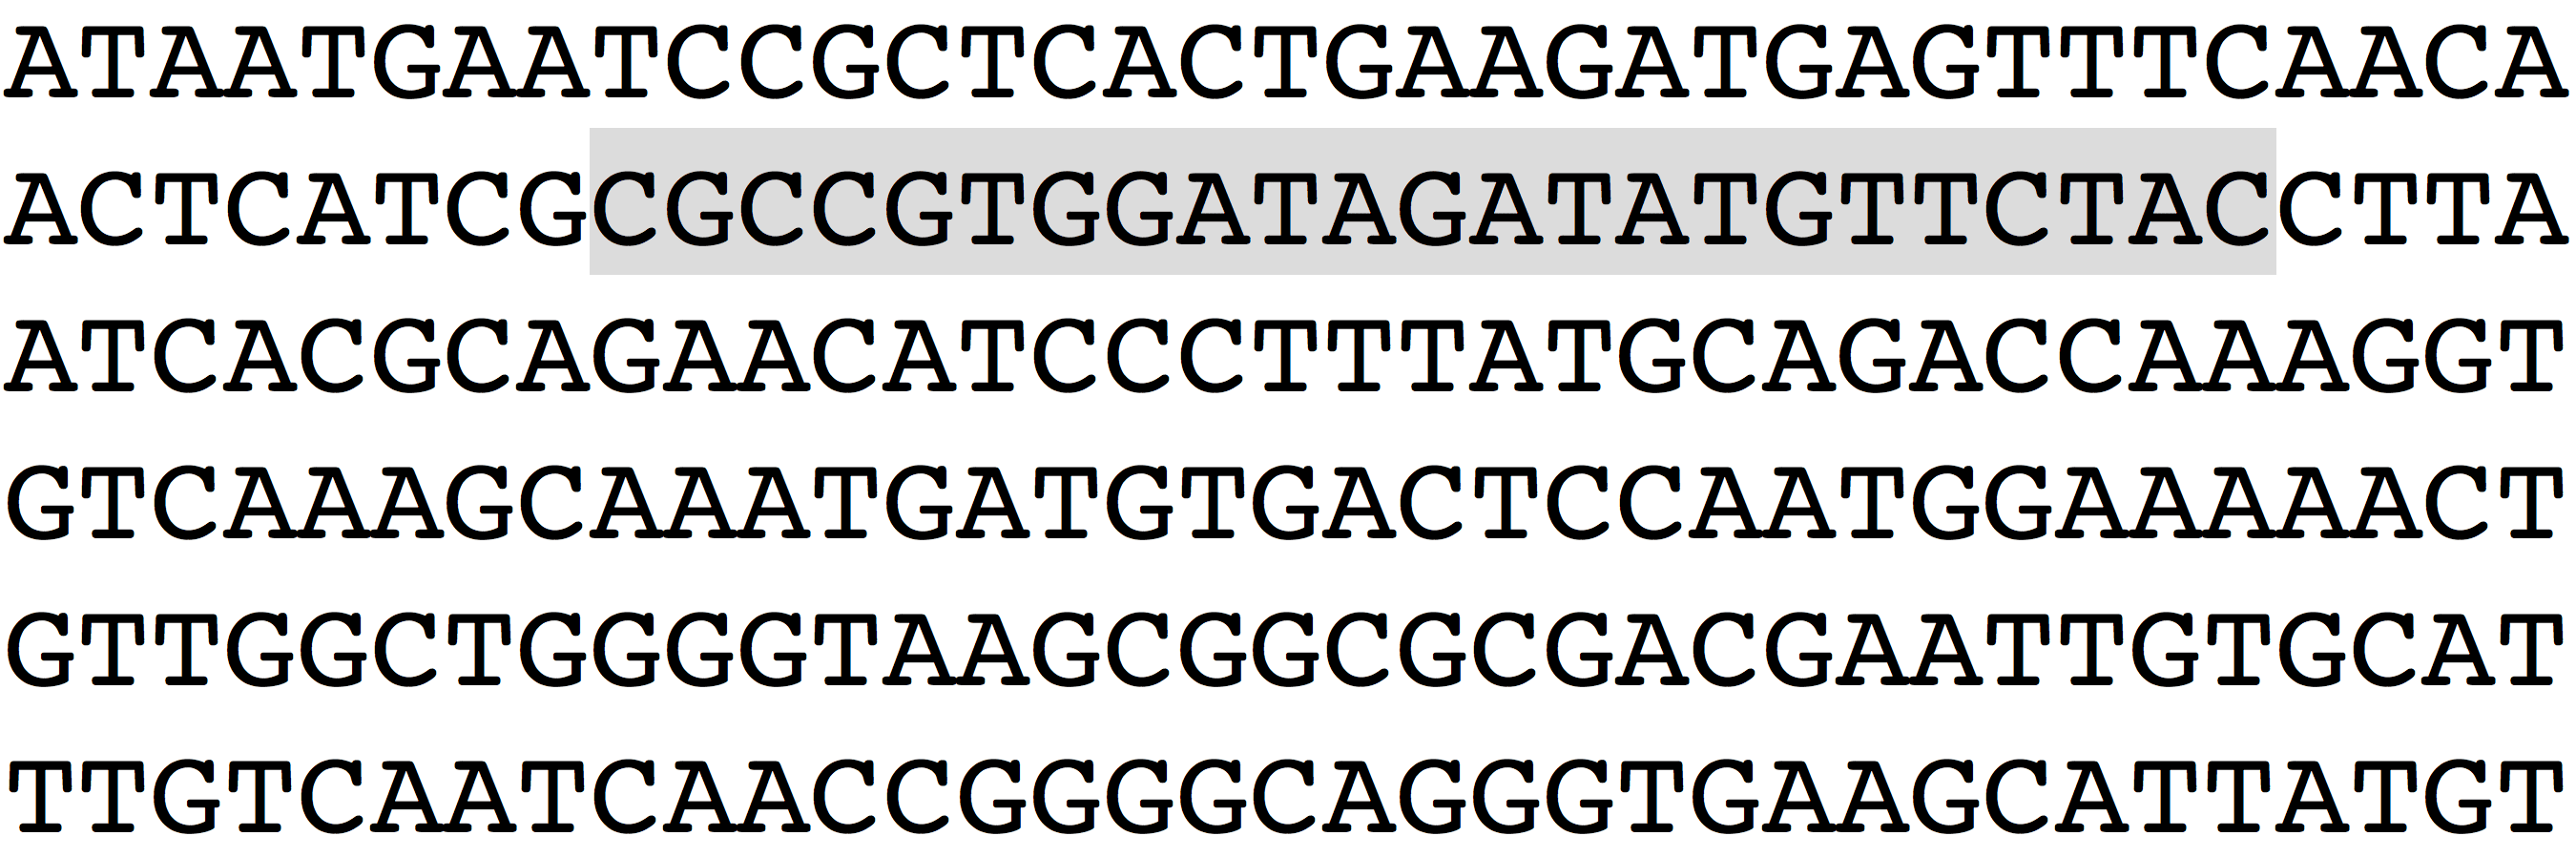 Secuencia de letras de ADN